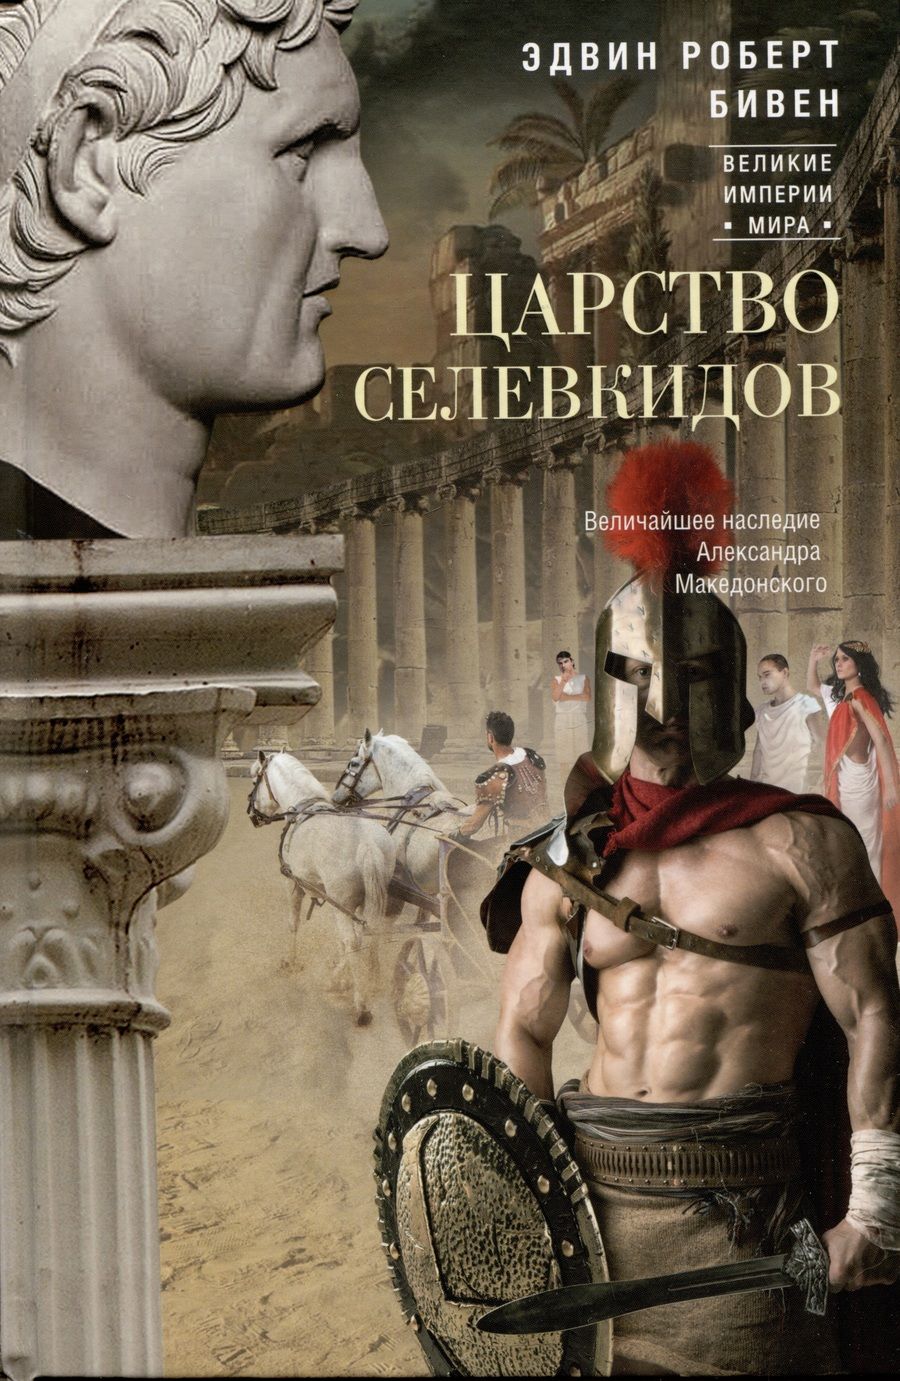 Обложка книги "Бивен: Царство селевкидов. Величайшее наследие Александра Македонского"